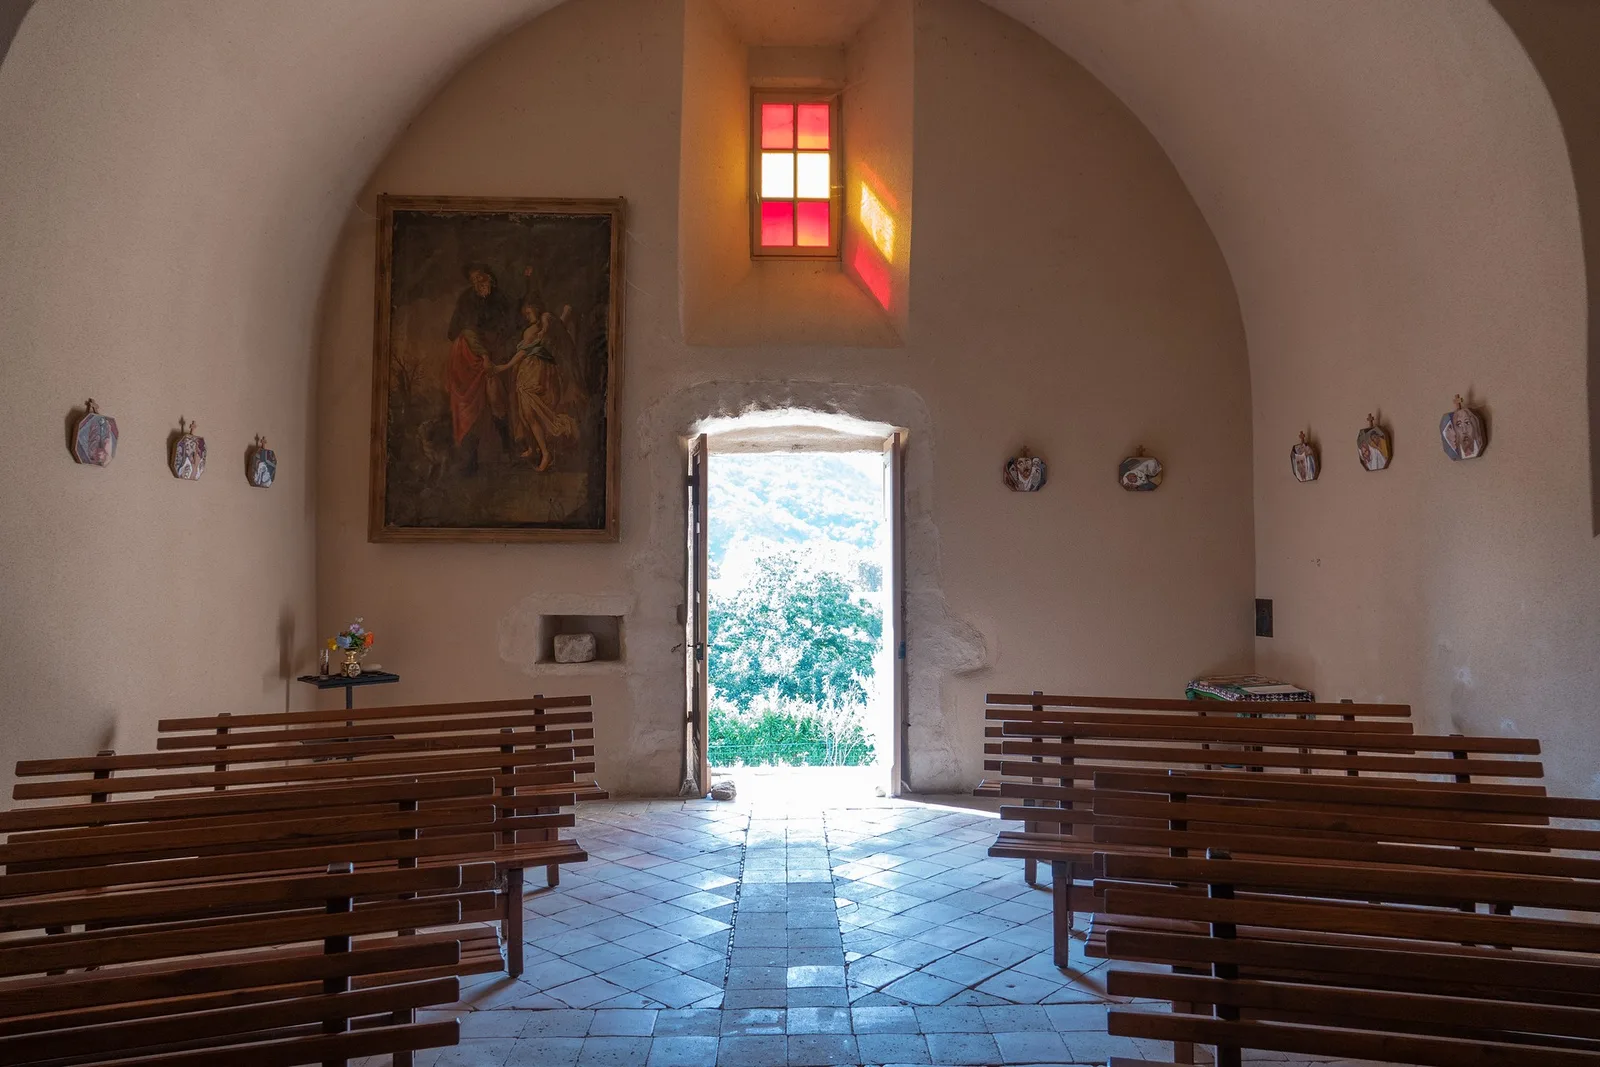 Thueyts - intérieur de la chapelle saint roch 2 ©sourcesetvolcans